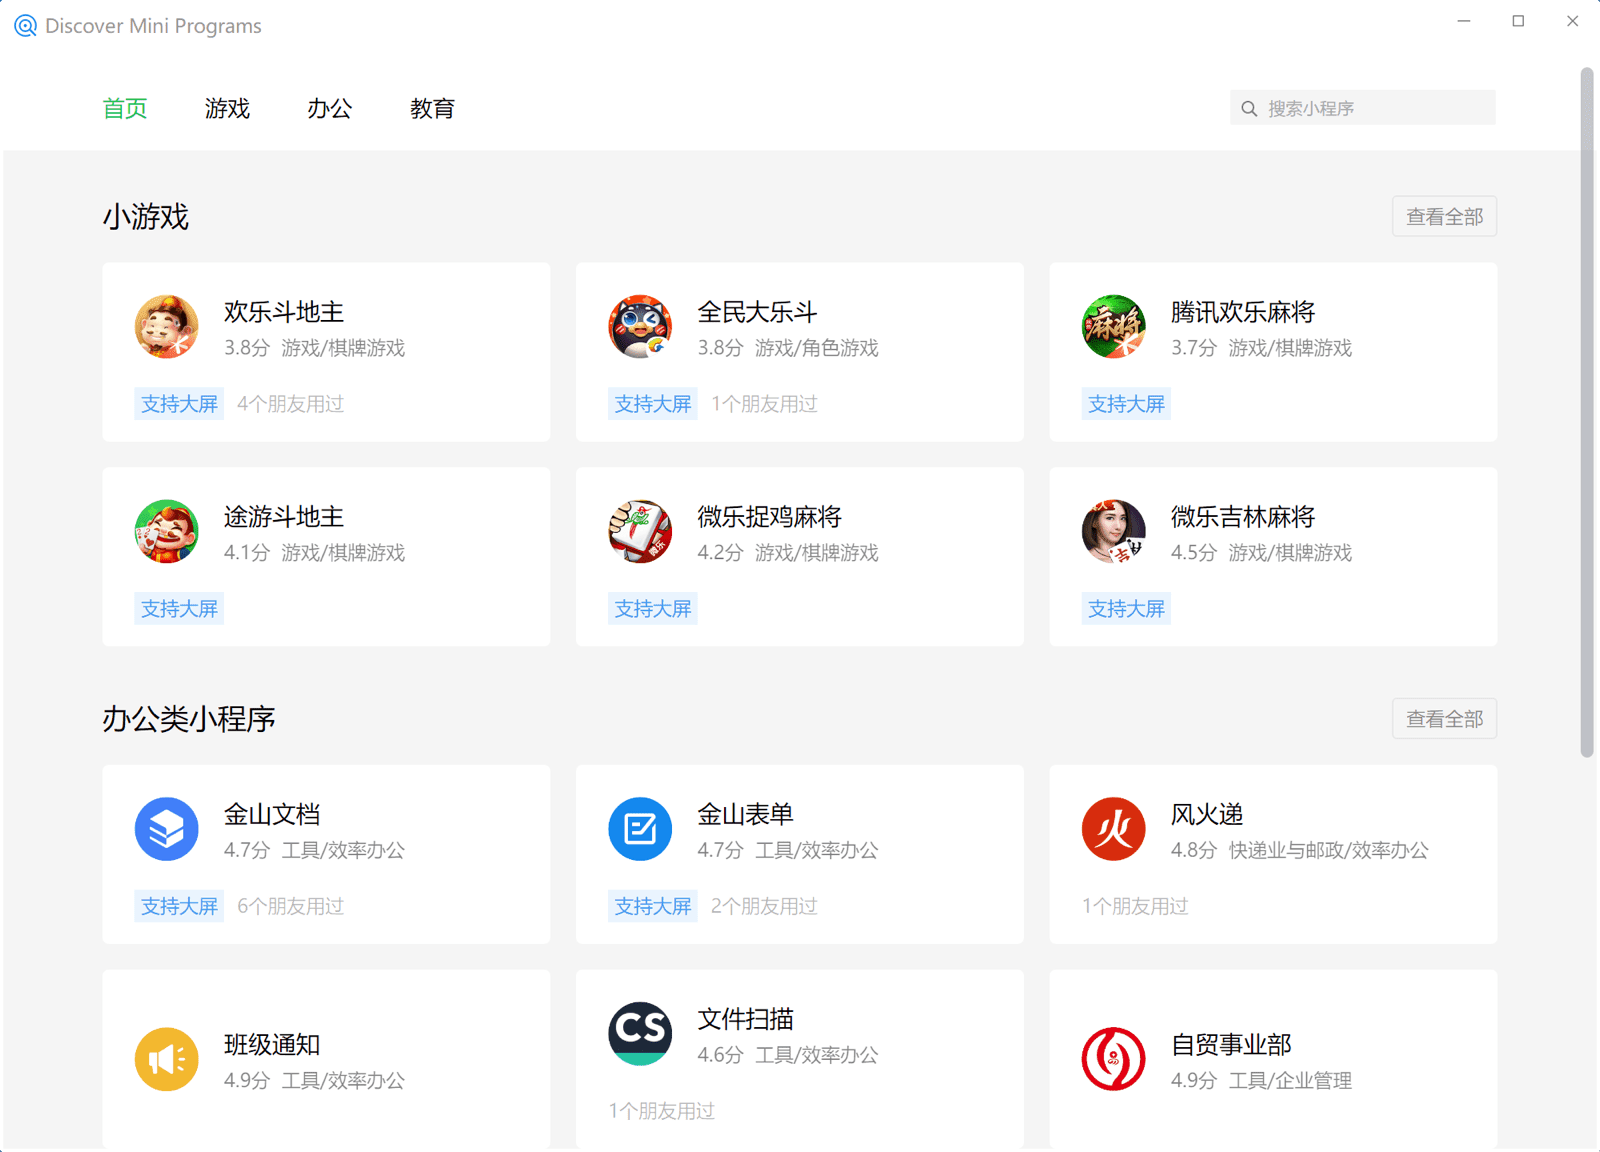 게임, 비즈니스, 교육 등 다양한 카테고리에 나열된 미니 앱을 보여주는 WeChat Windows 클라이언트의 미니 앱 검색